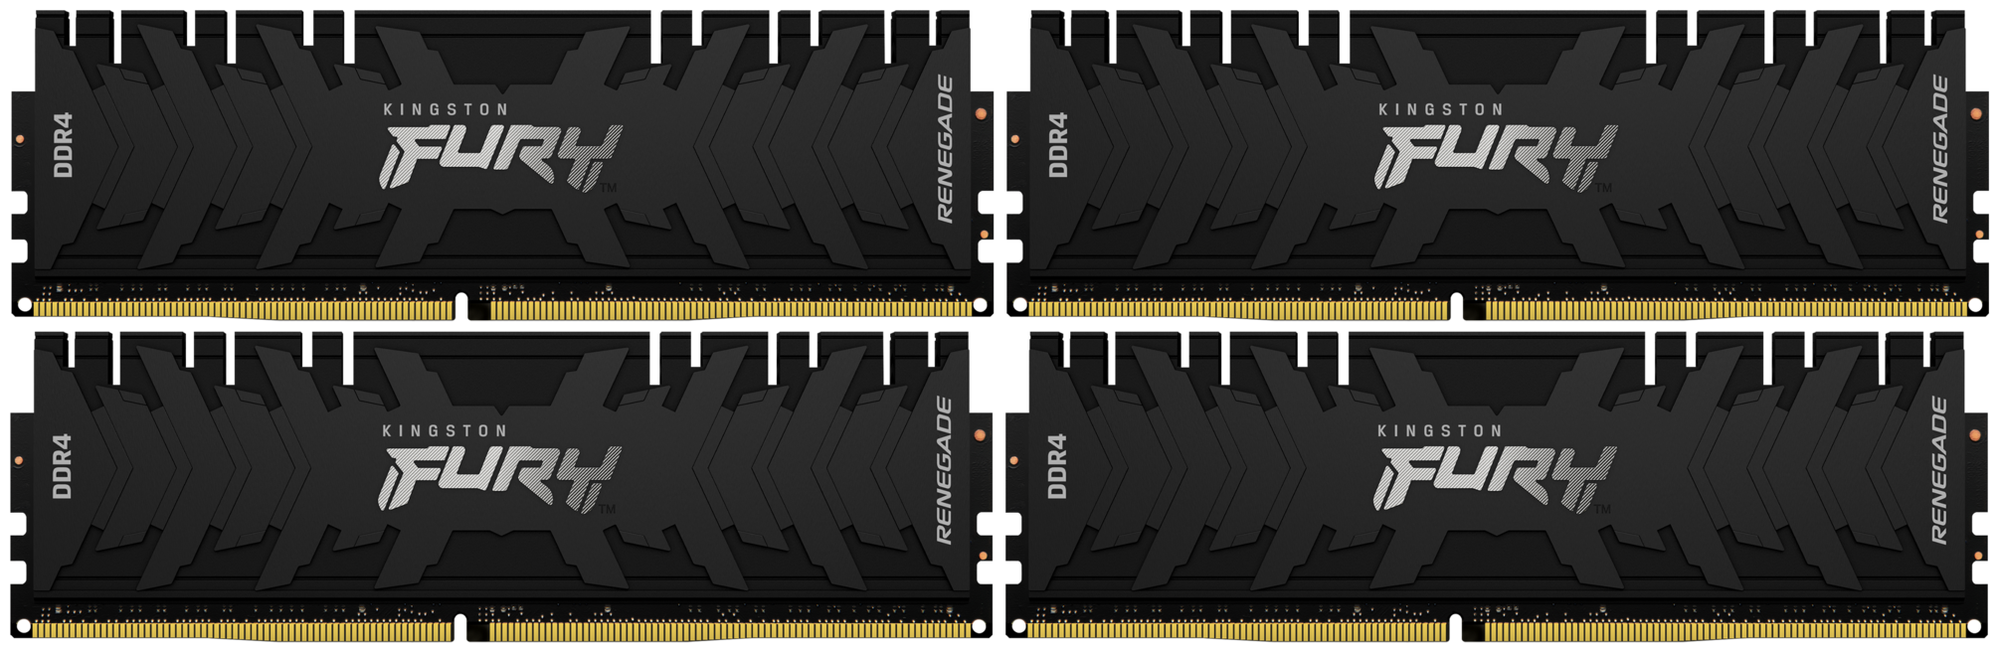 Оперативная память Kingston Fury 128 ГБ (32 ГБ x 4 шт.) DDR4 3200 МГц DIMM CL16 KF432C16RBK4/128